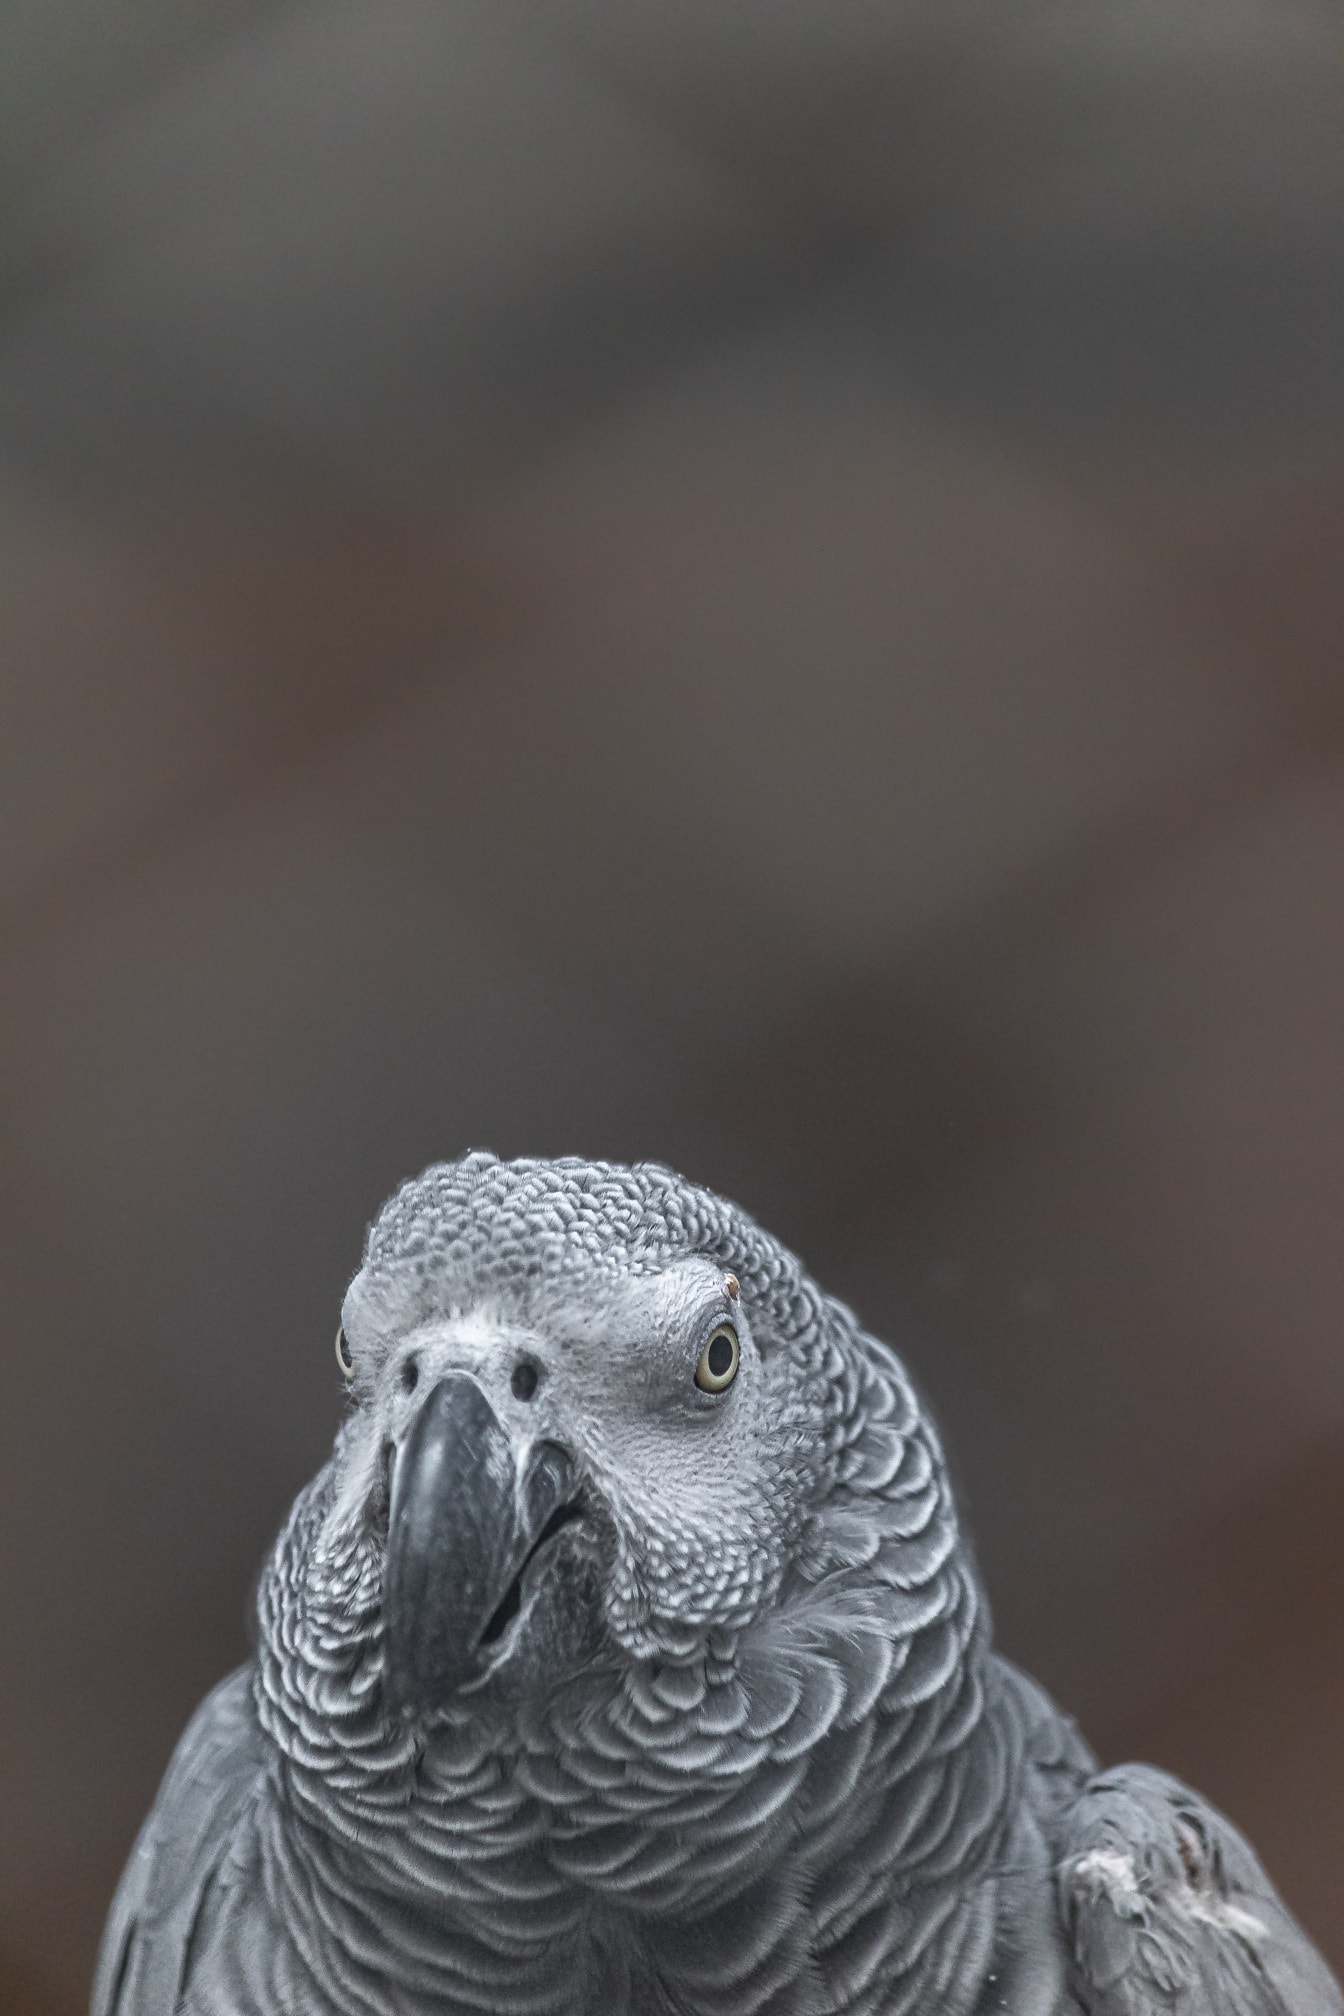 Nærbillede af hoved og næb af Congogrå afrikansk papegøje (Psittacus erithacus)